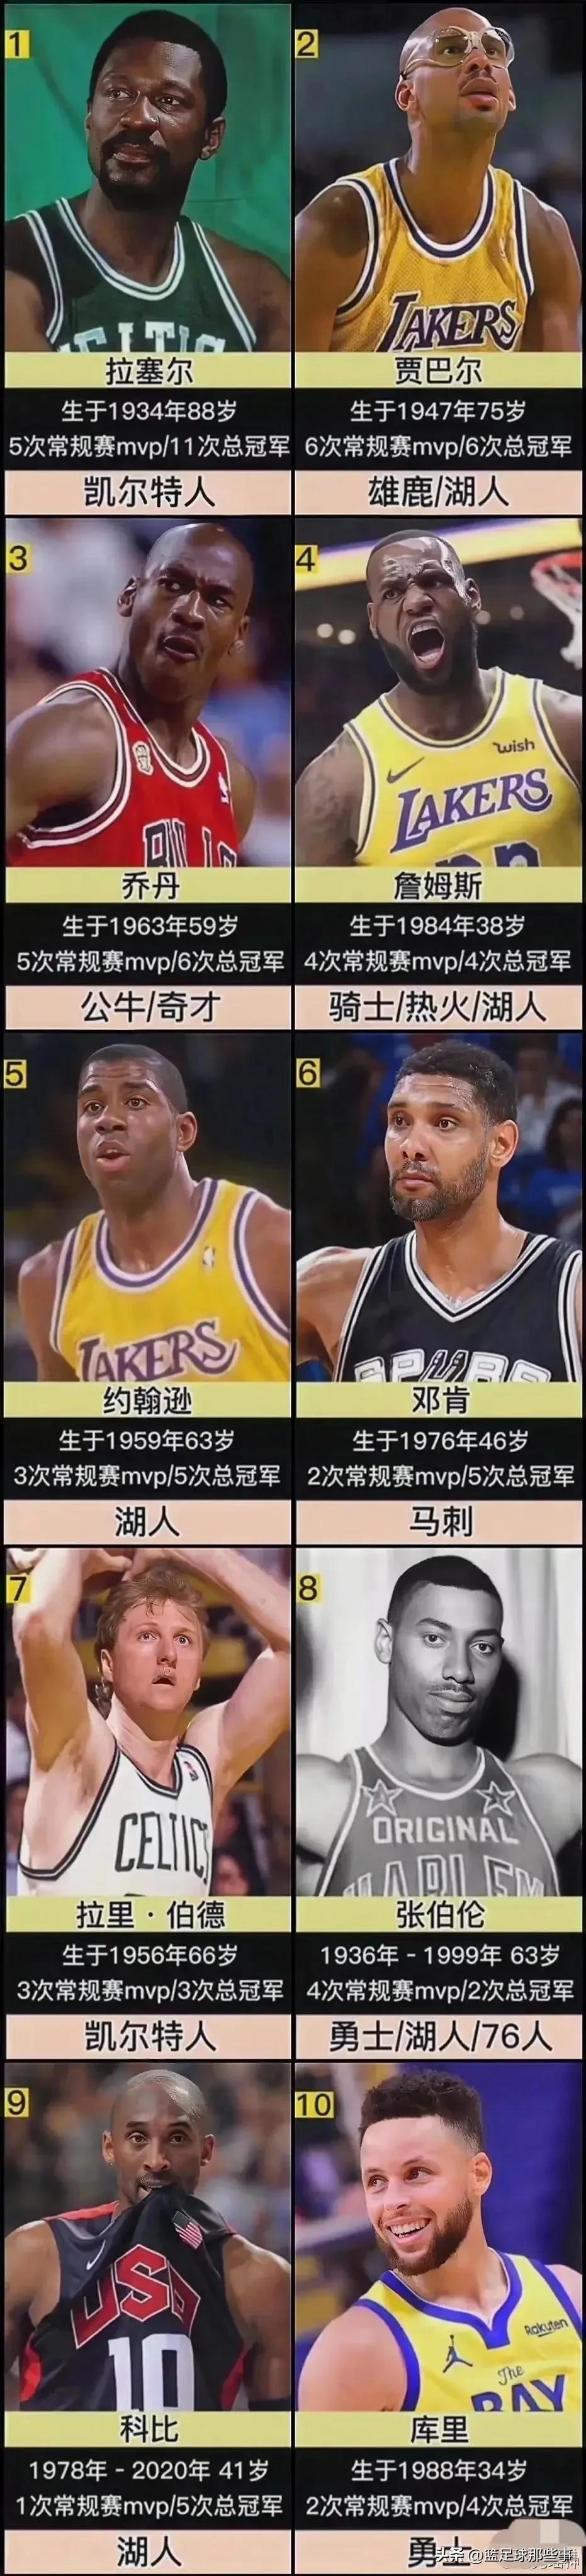 NBA历史排名前10运动员：都拿过常规赛MVP和总冠军，且总和达到6个及以上。
(1)